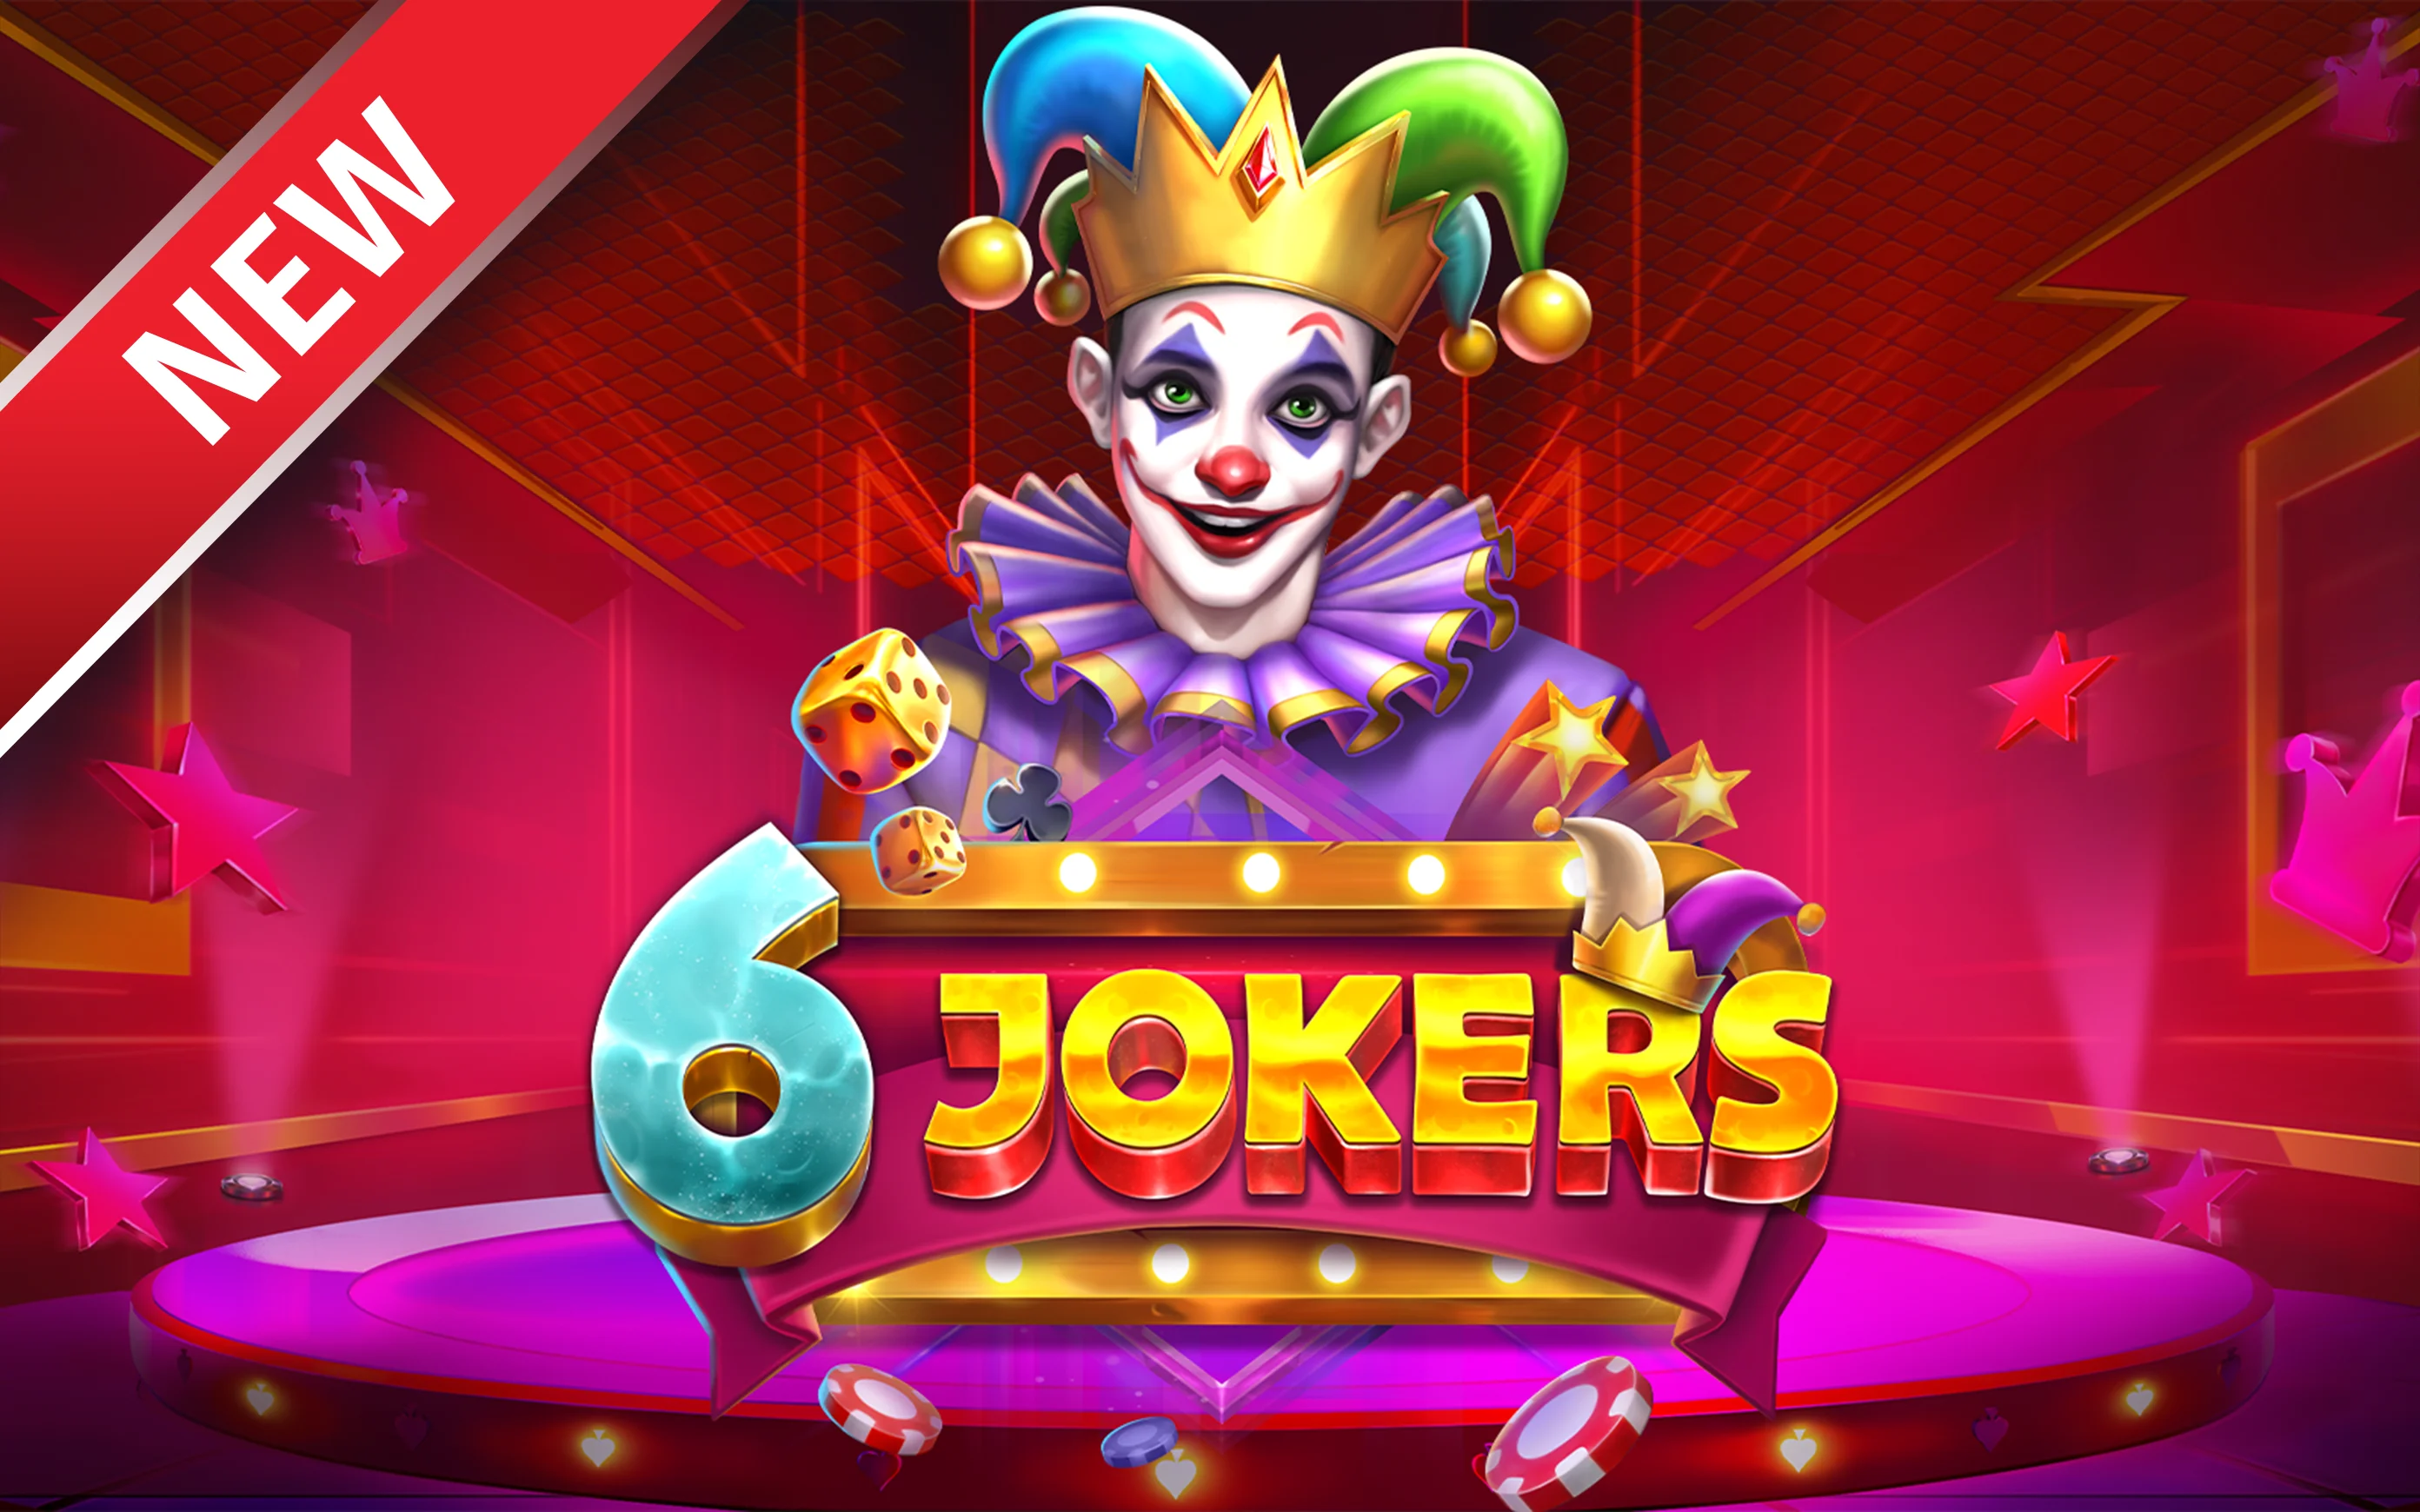 Jouer à 6 Jokers sur le casino en ligne Starcasino.be